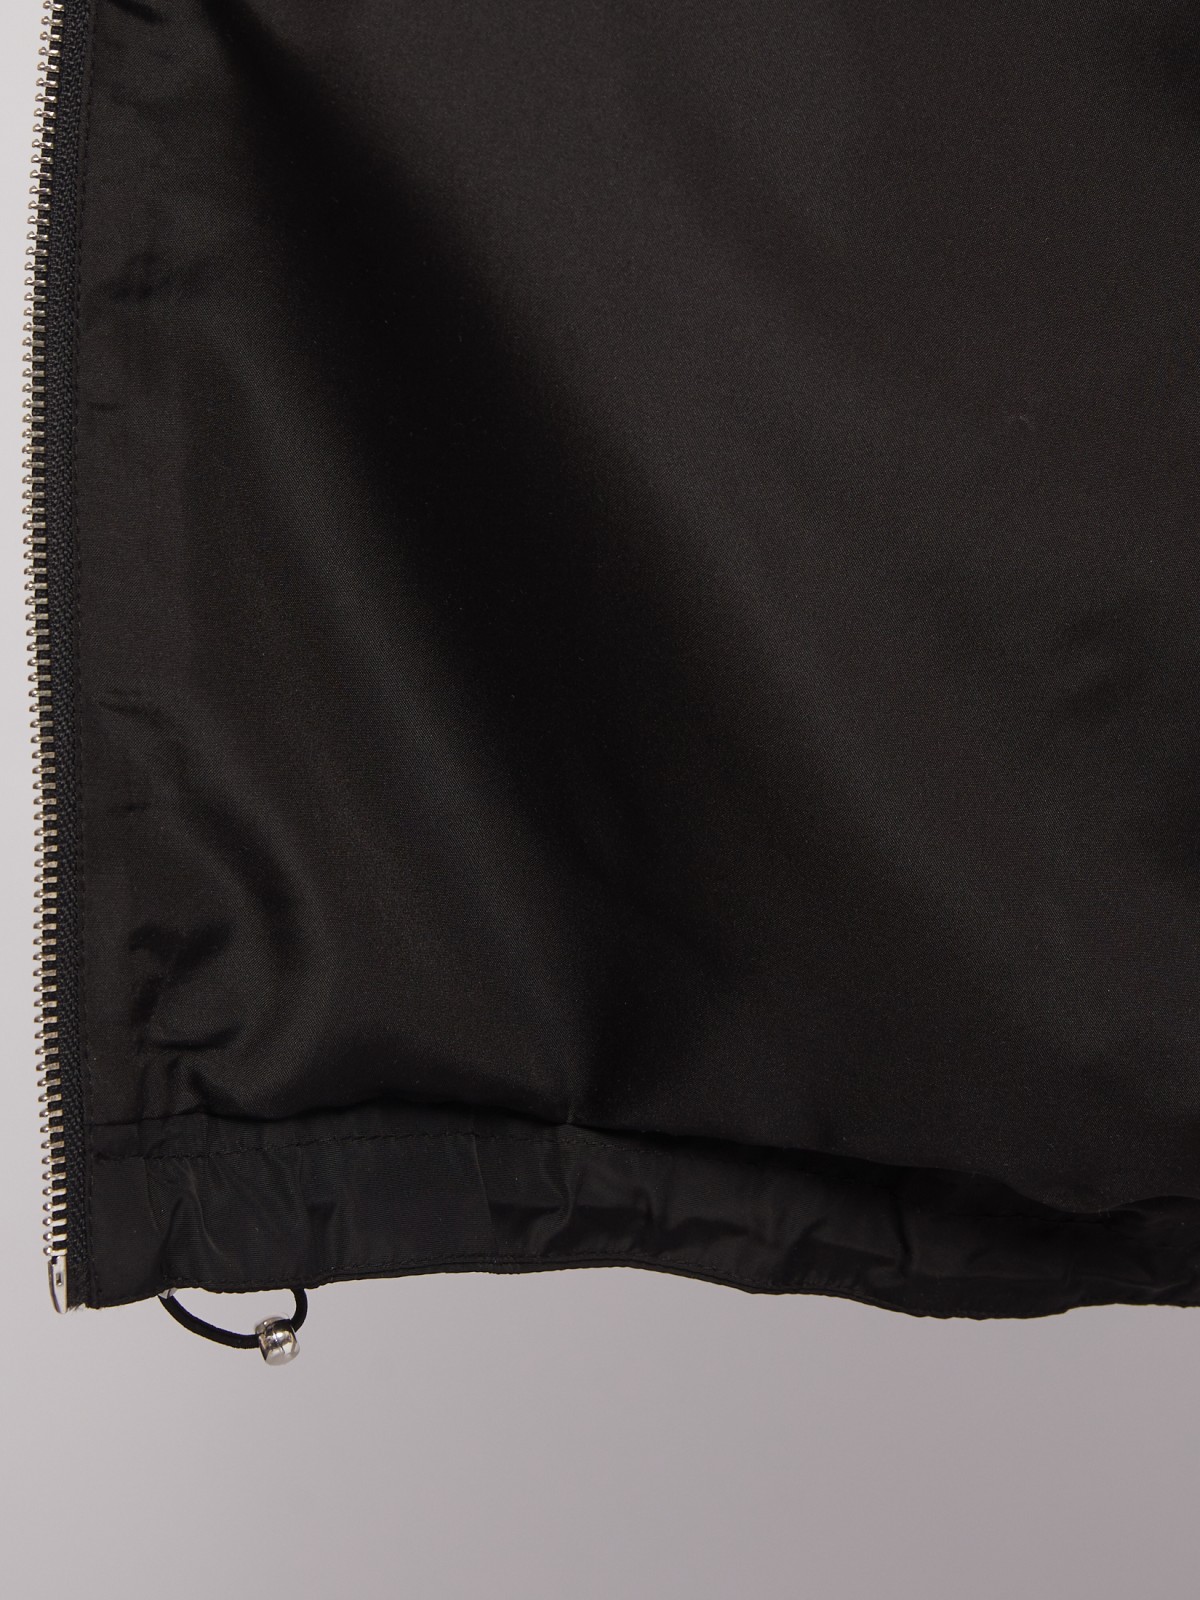 Лёгкая куртка-бомбер на молнии zolla 024215639194, цвет черный, размер XS - фото 5